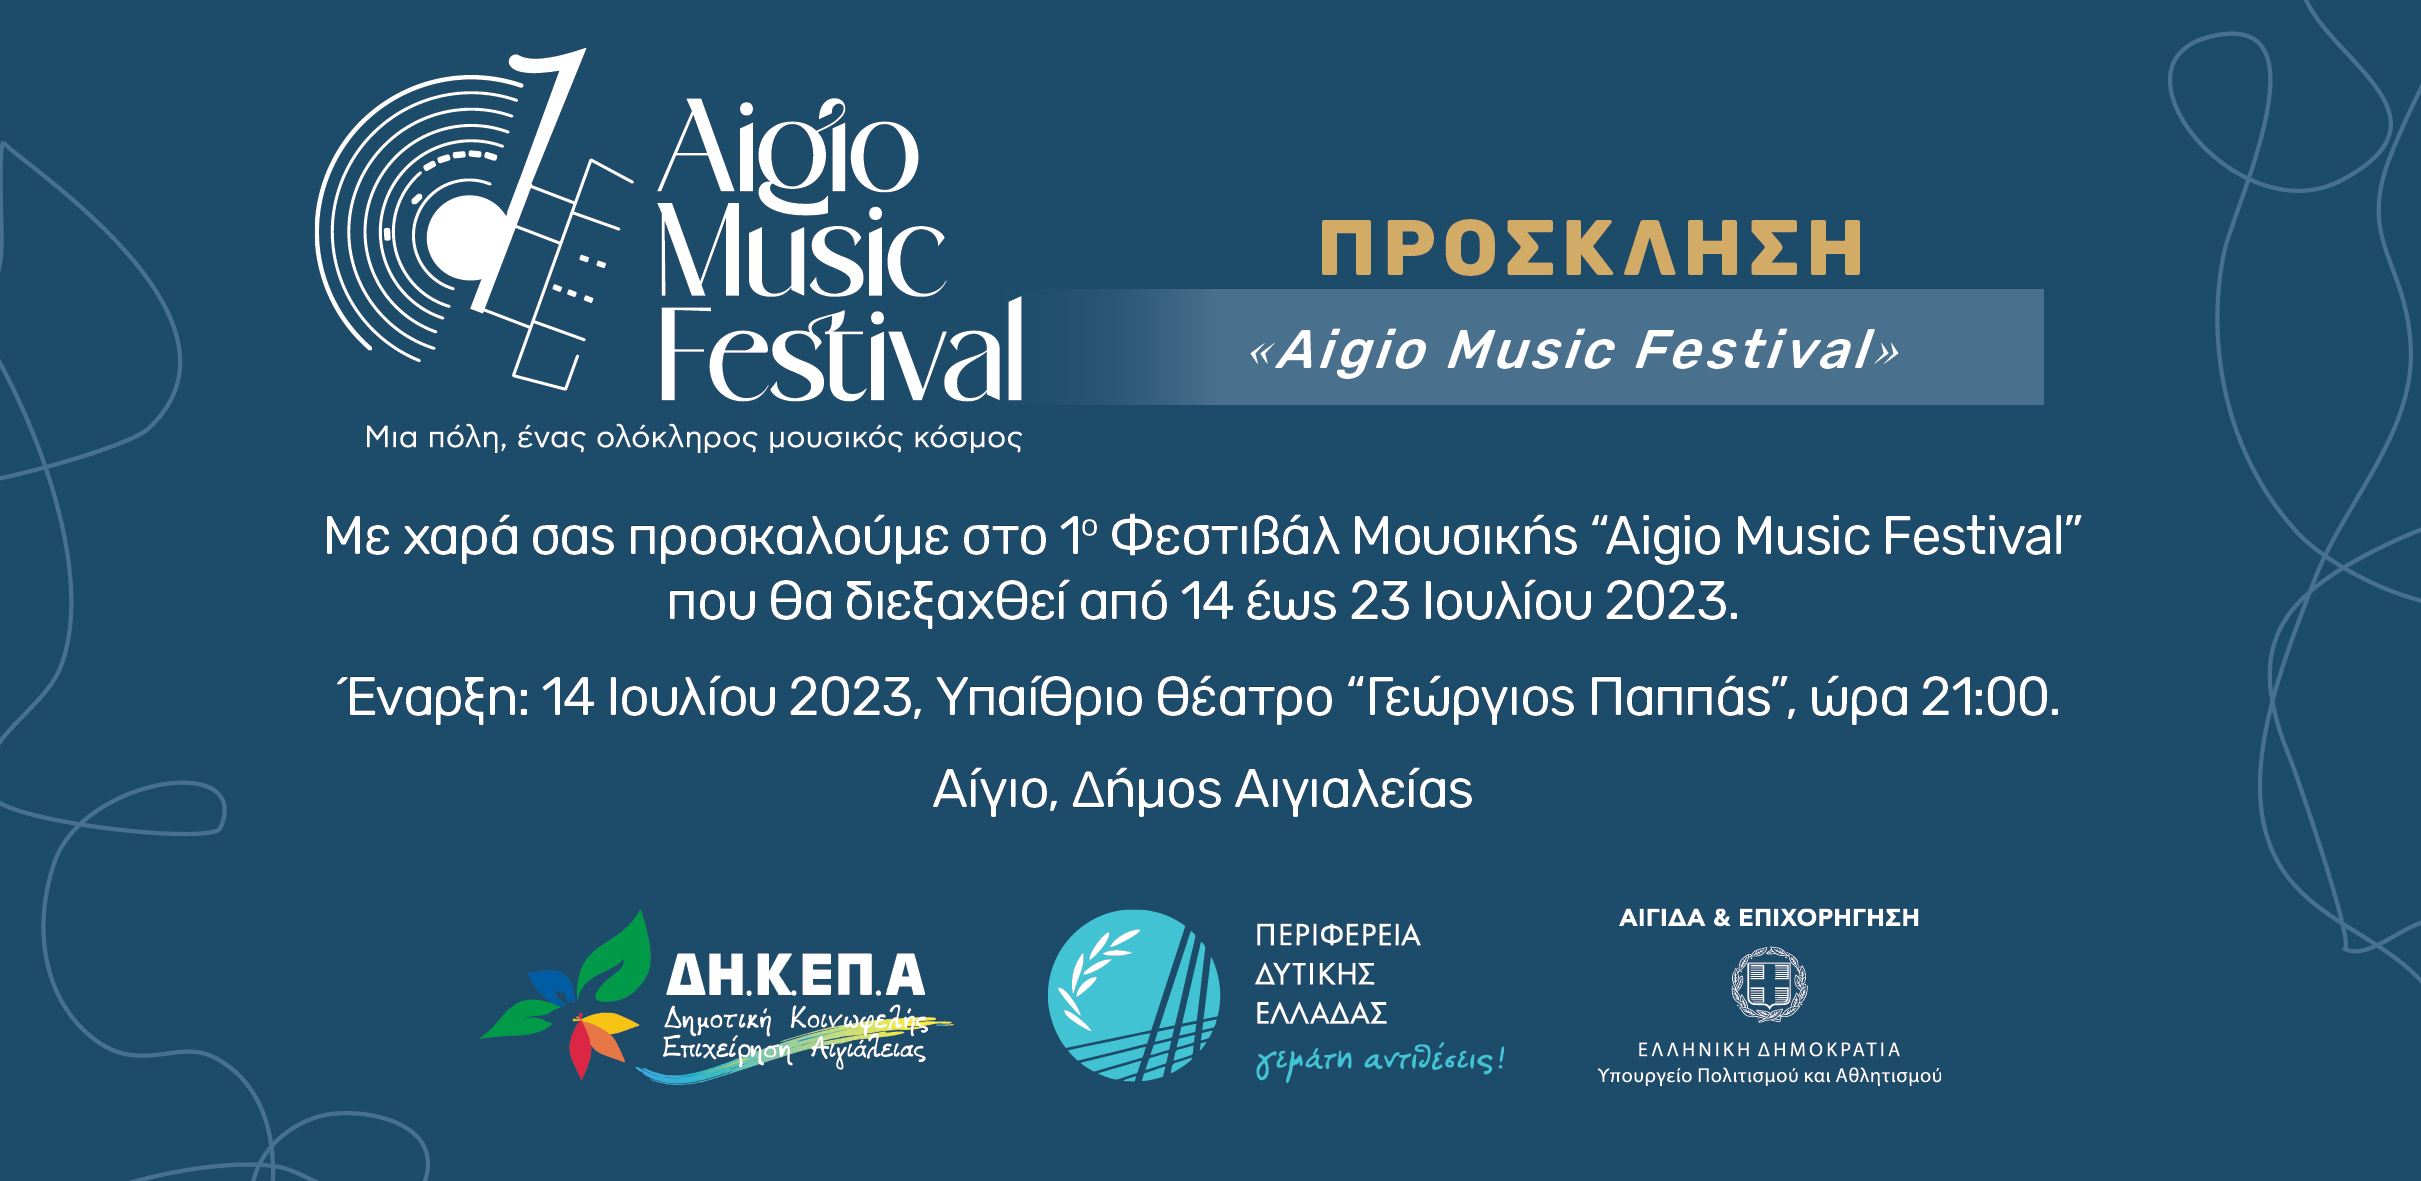 Το Αίγιο αποκτά το δικό του μουσικό Φεστιβάλ | Πρεμιέρα για το 1ο Aigio Music Festival | Παρασκευή 14 Ιουλίου